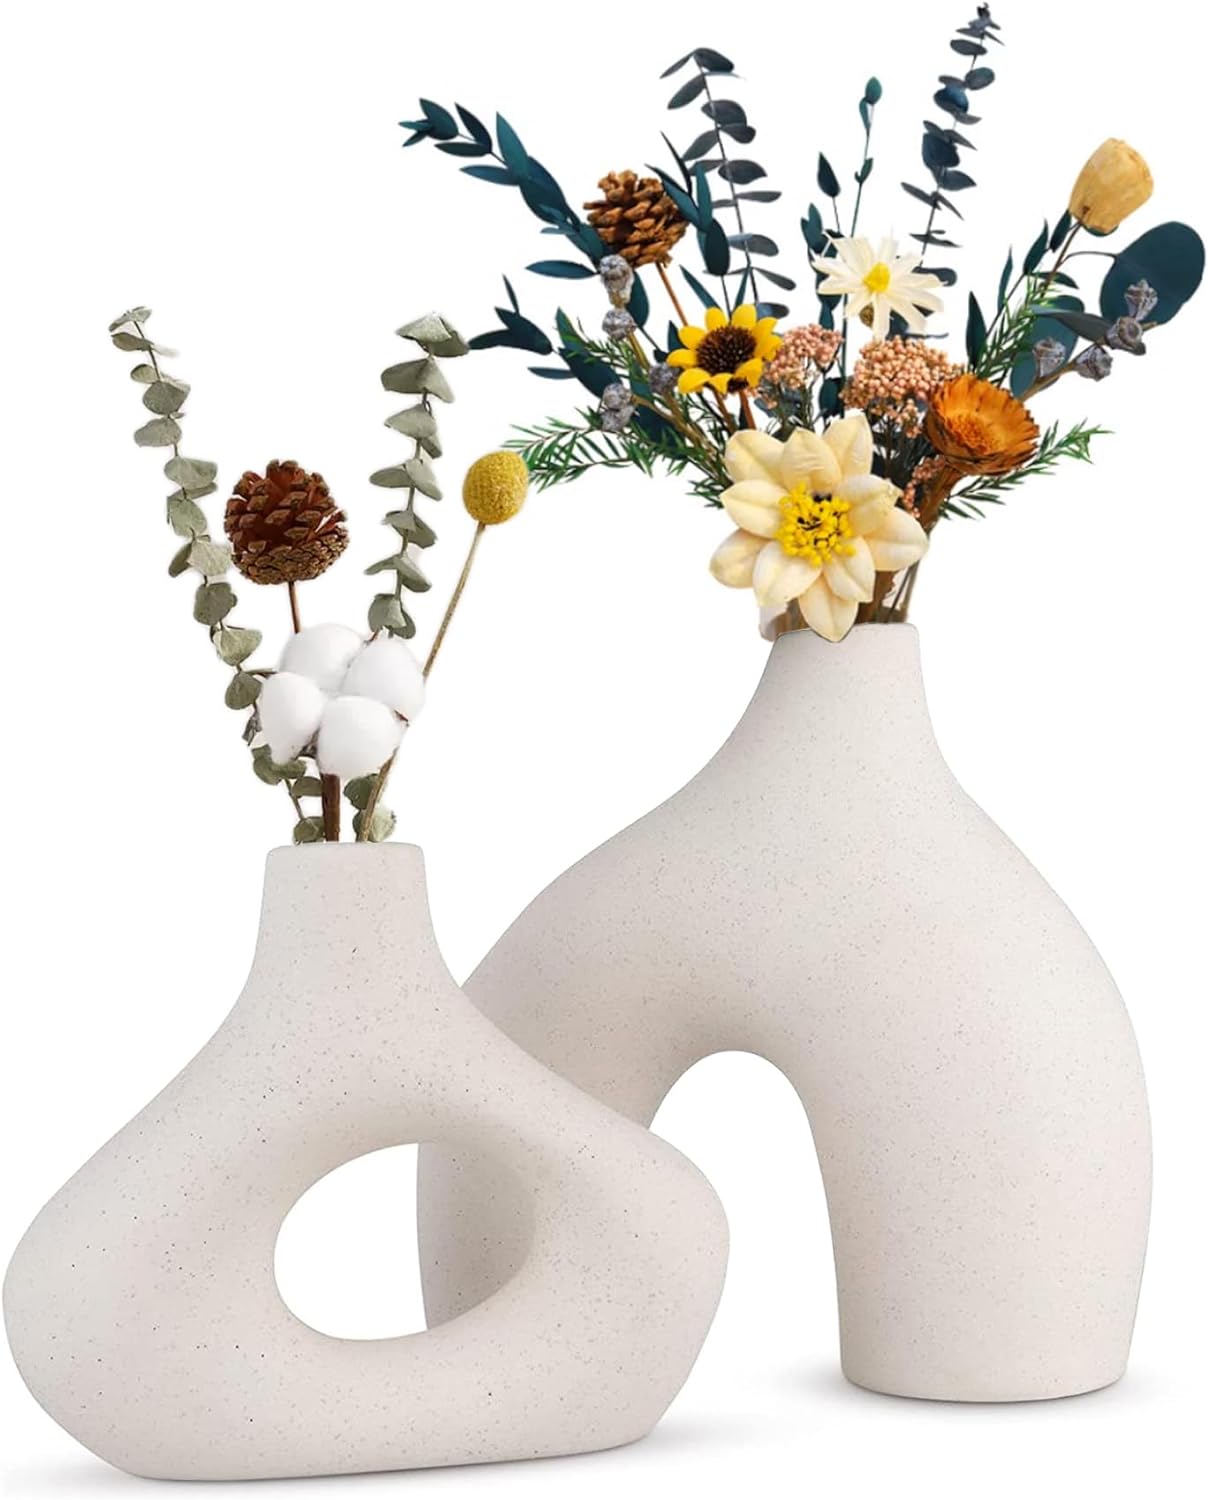 Ceramic Set of 2 Modern White Vases for Home D�cor